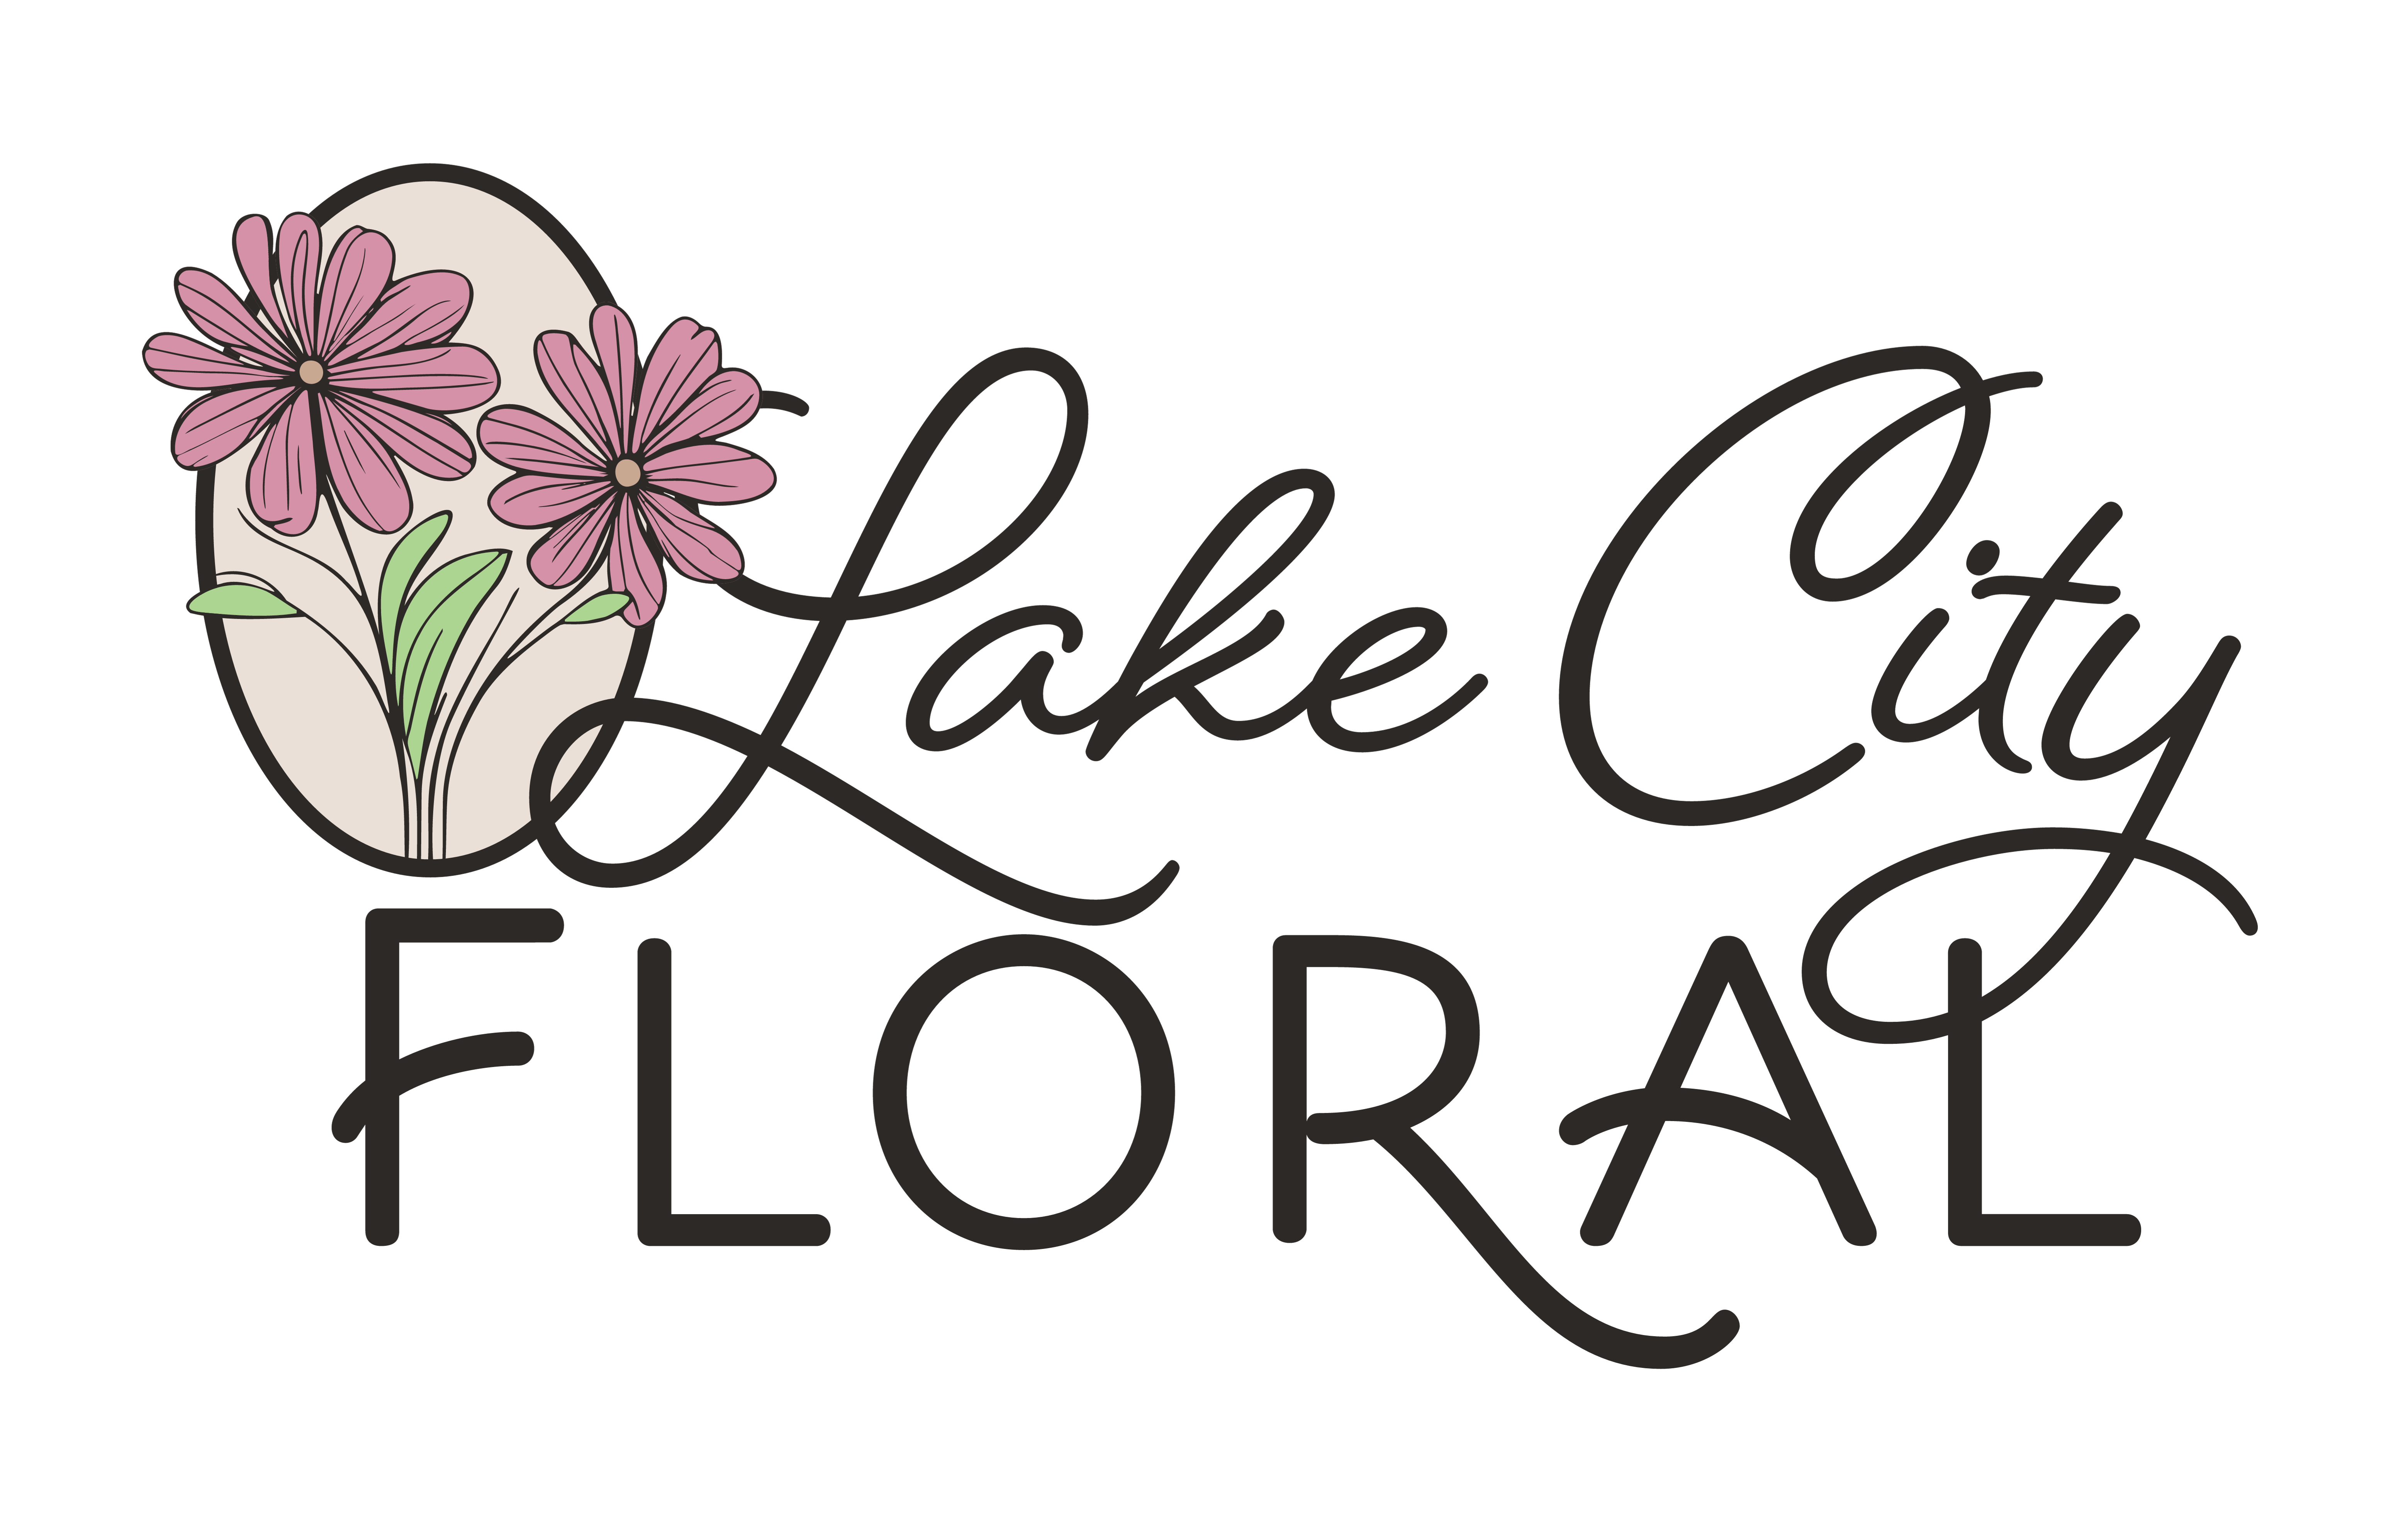 Lake City Floral